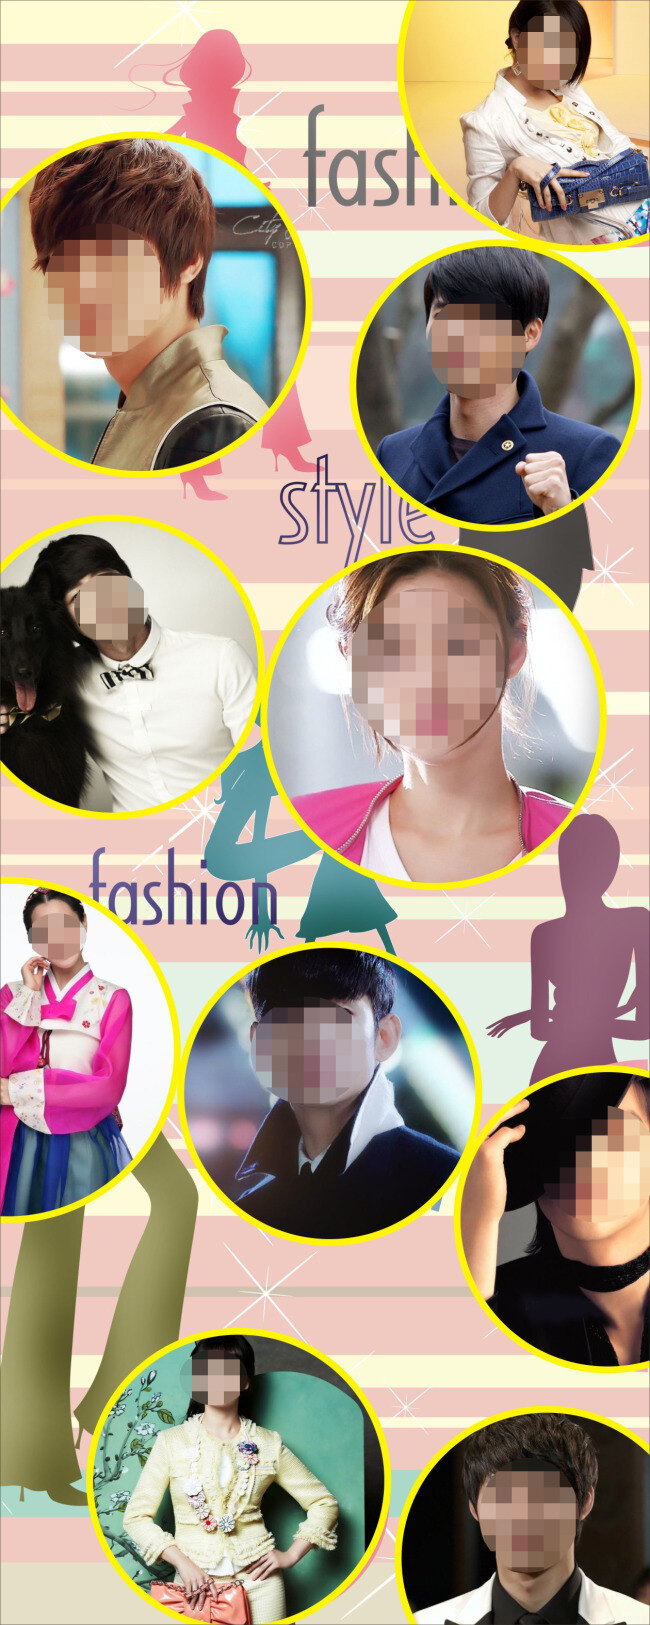 韩国明星 墙 易拉宝 圆圈 fashion style 韩风 韩国 剪影 明星墙 海报 原创设计 原创海报